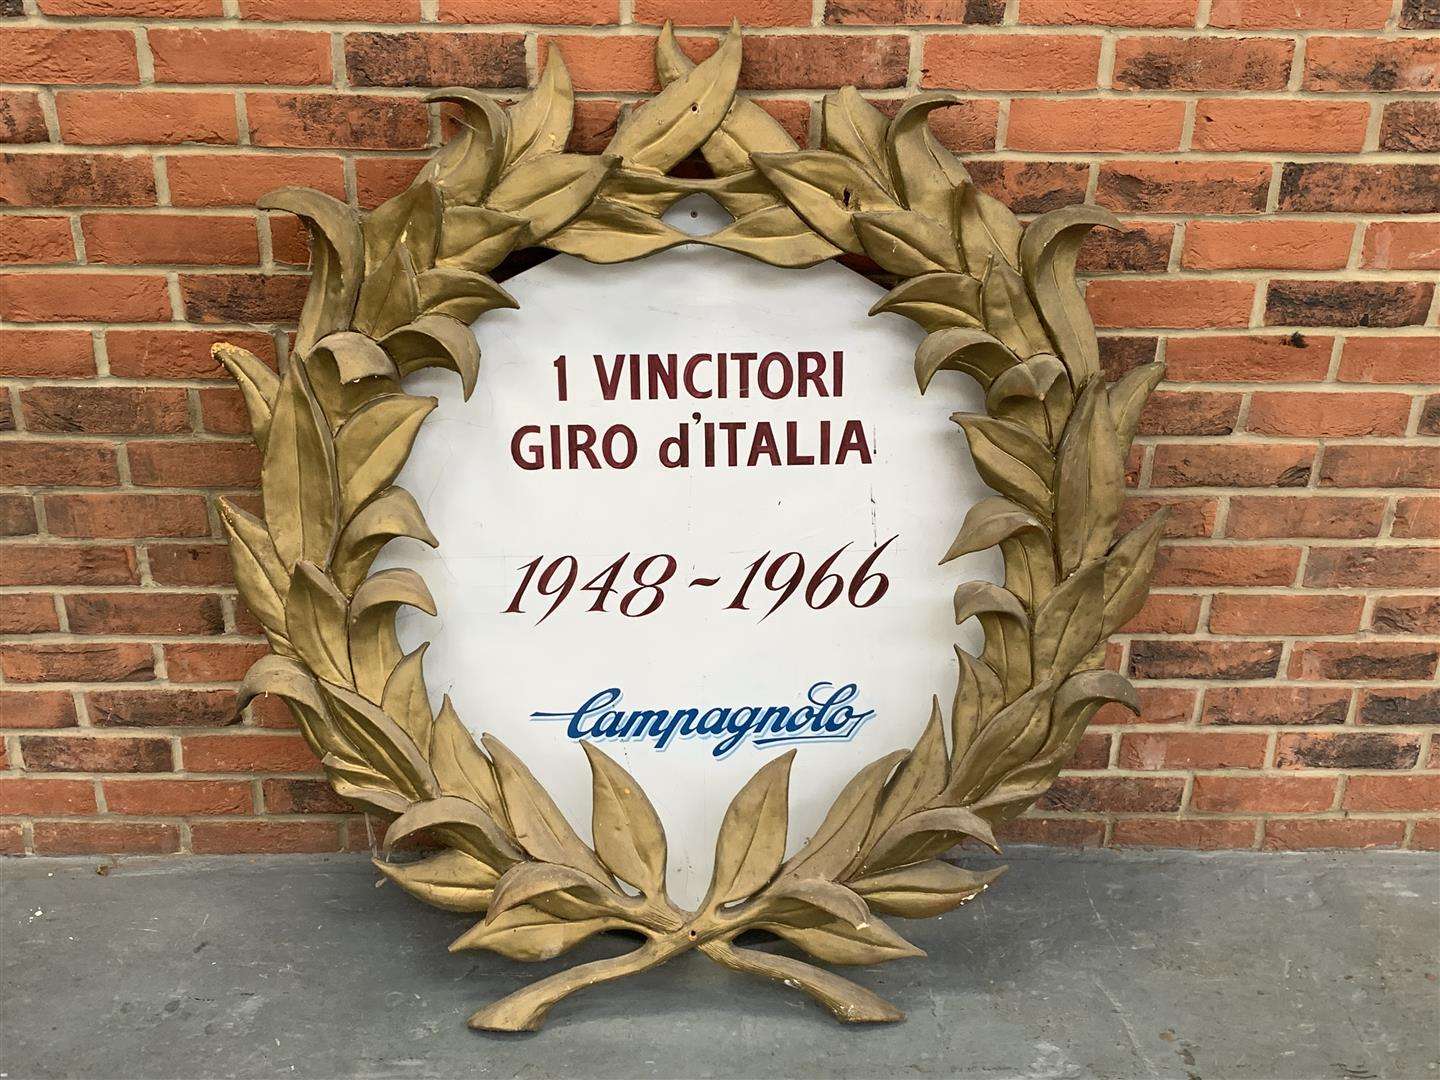 <p>Vincitori Giro d'Italia 1948 to 1966&nbsp;winner's wreath &nbsp;</p>